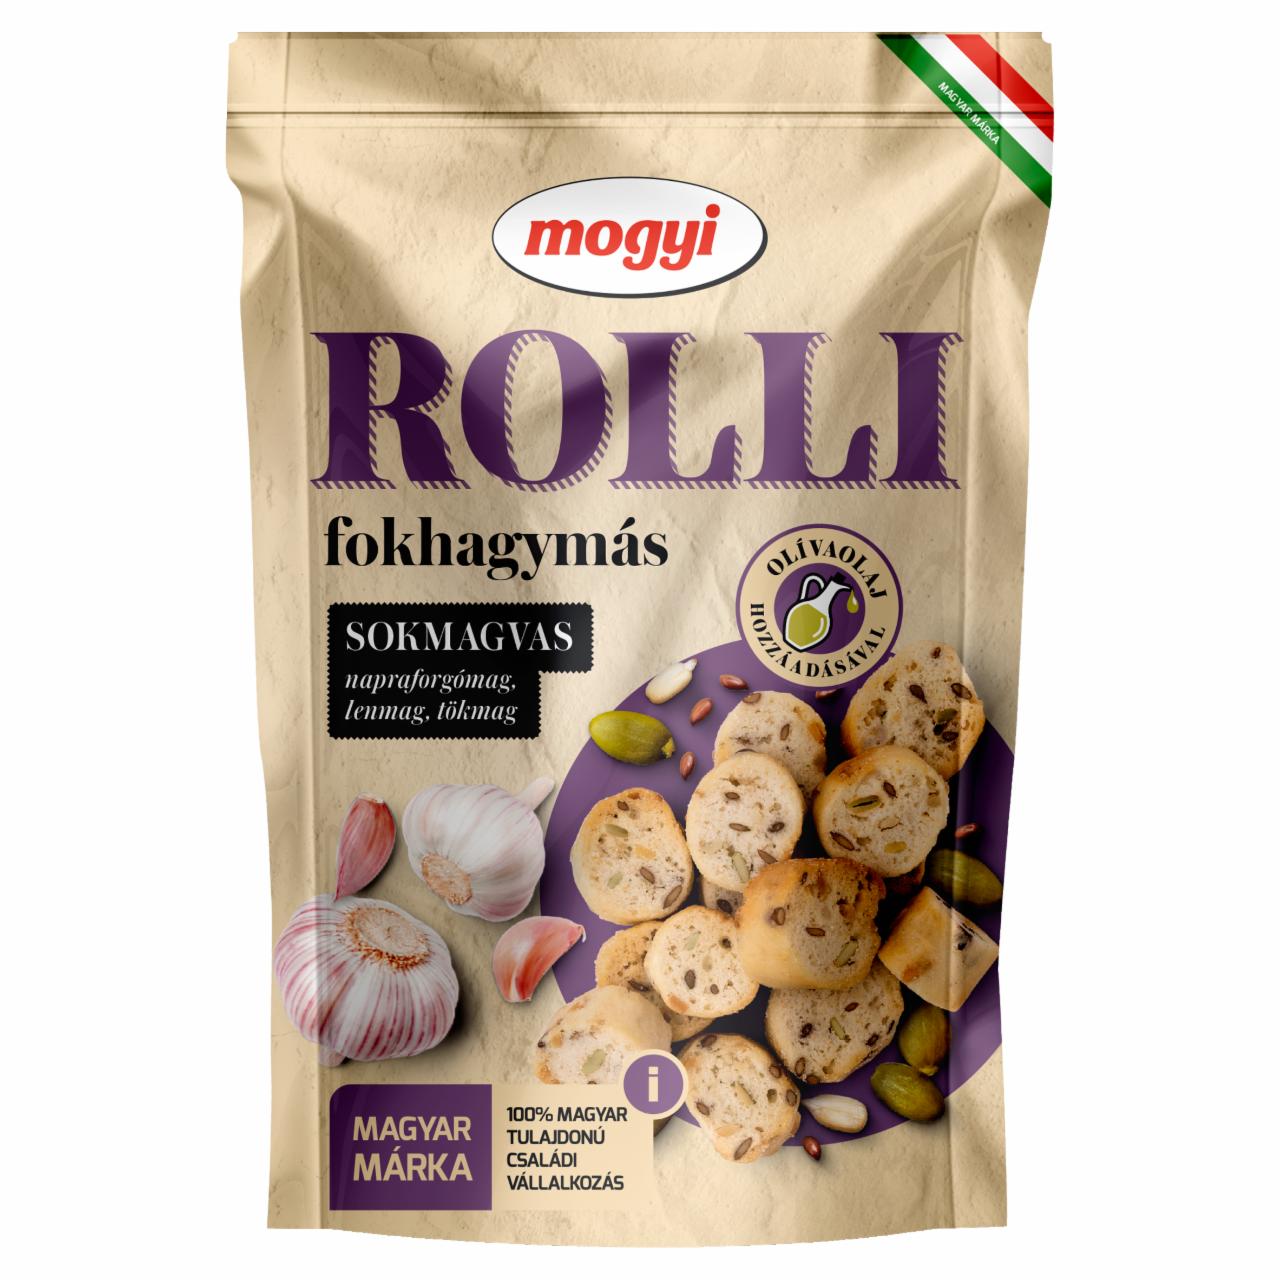 Képek - Mogyi Rolli fokhagymás, pirított, sokmagvas kenyérkarika 90 g